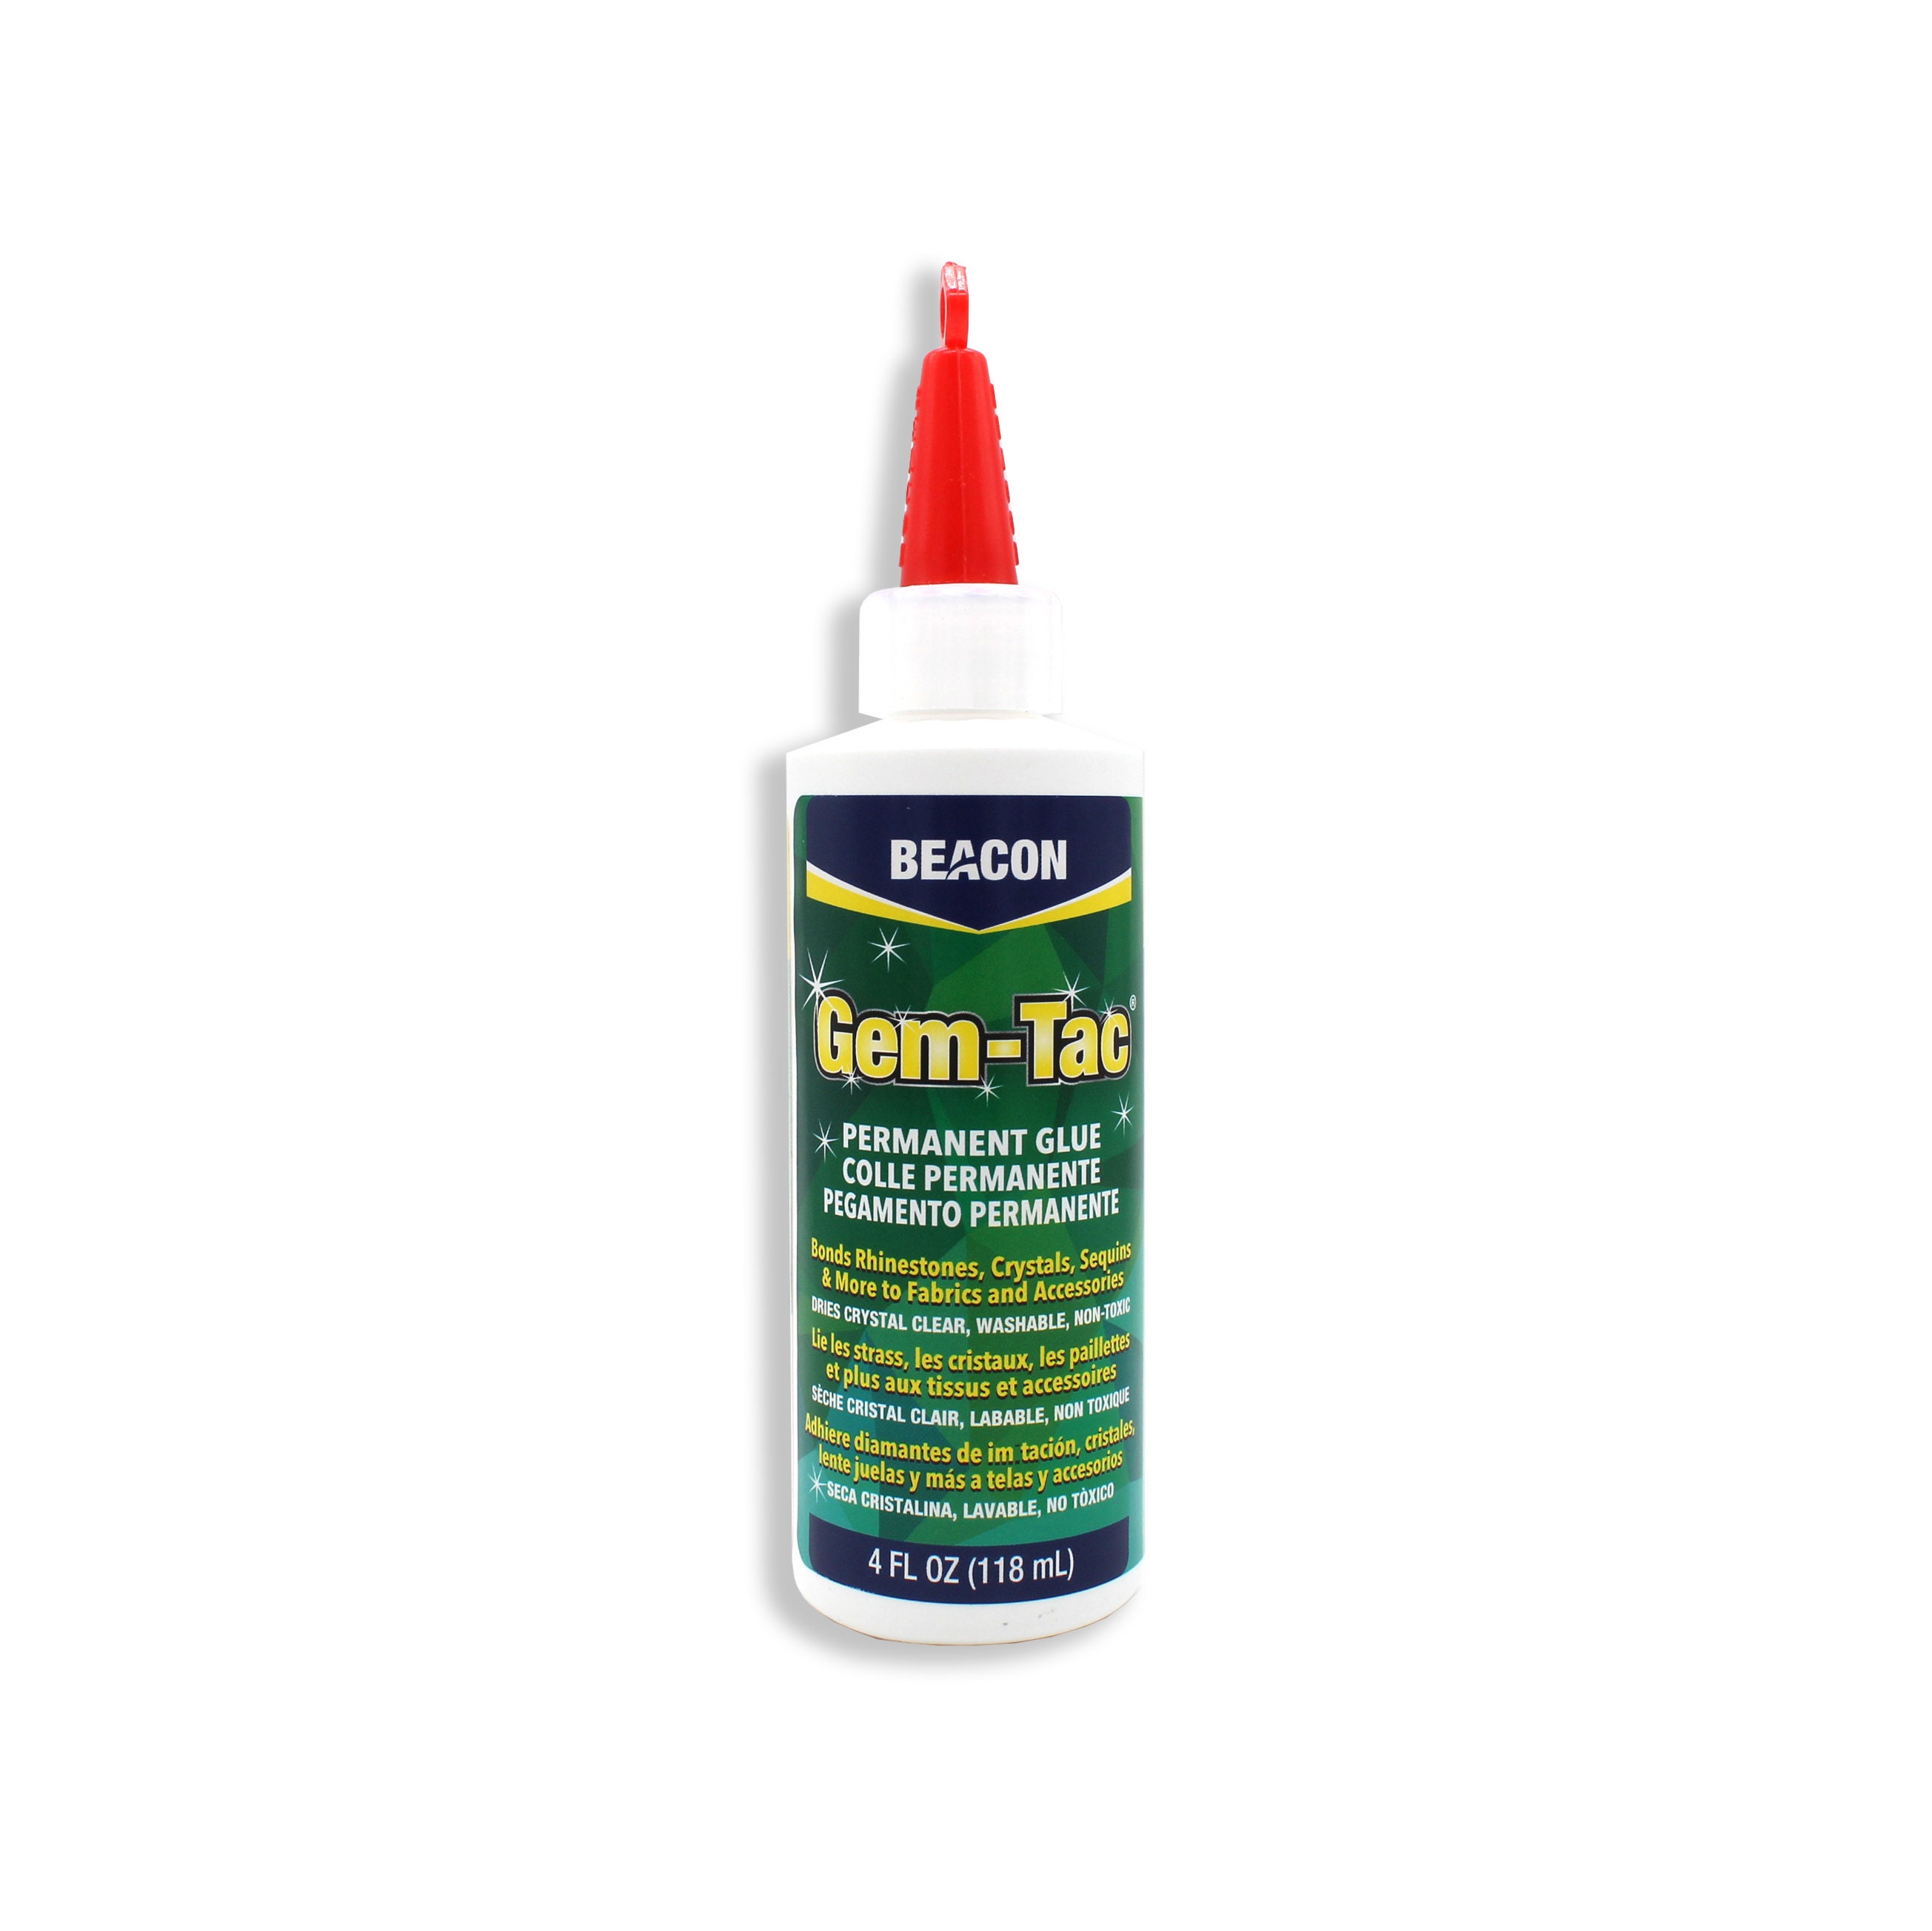 Beacon Gem-tac Permanent Glue 